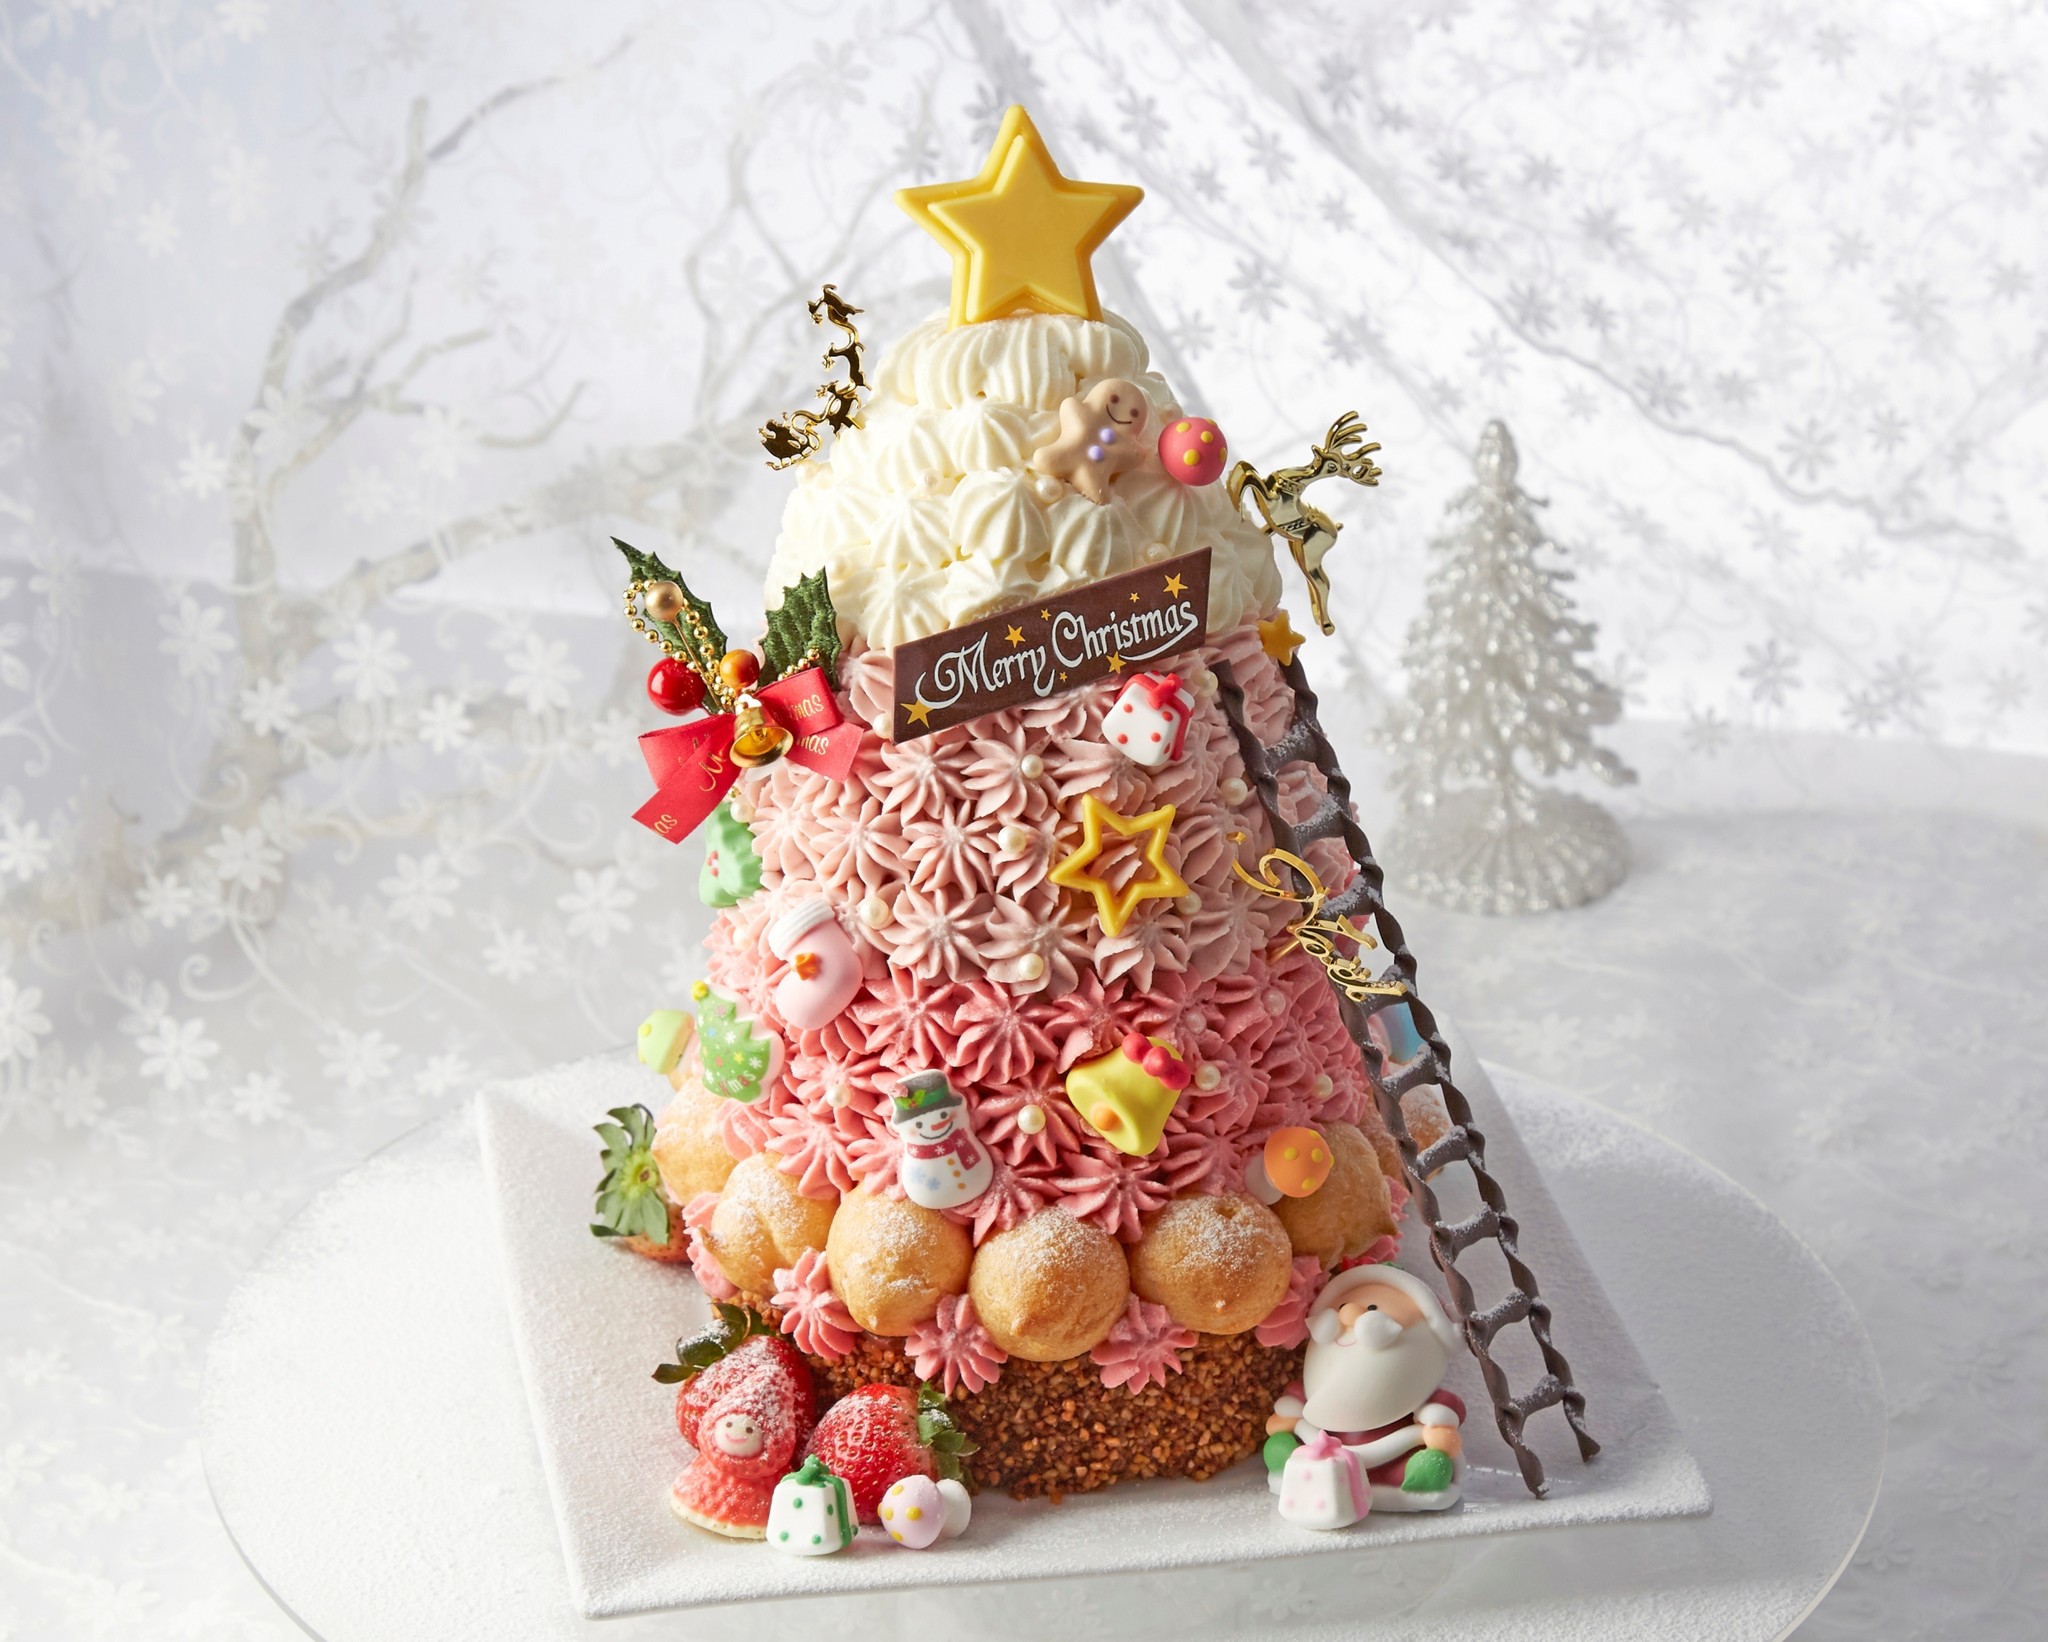 川越プリンスホテル 団欒 をテーマに飾り付けができるクリスマスケーキなど全4種類を販売 株式会社プリンスホテルのプレスリリース